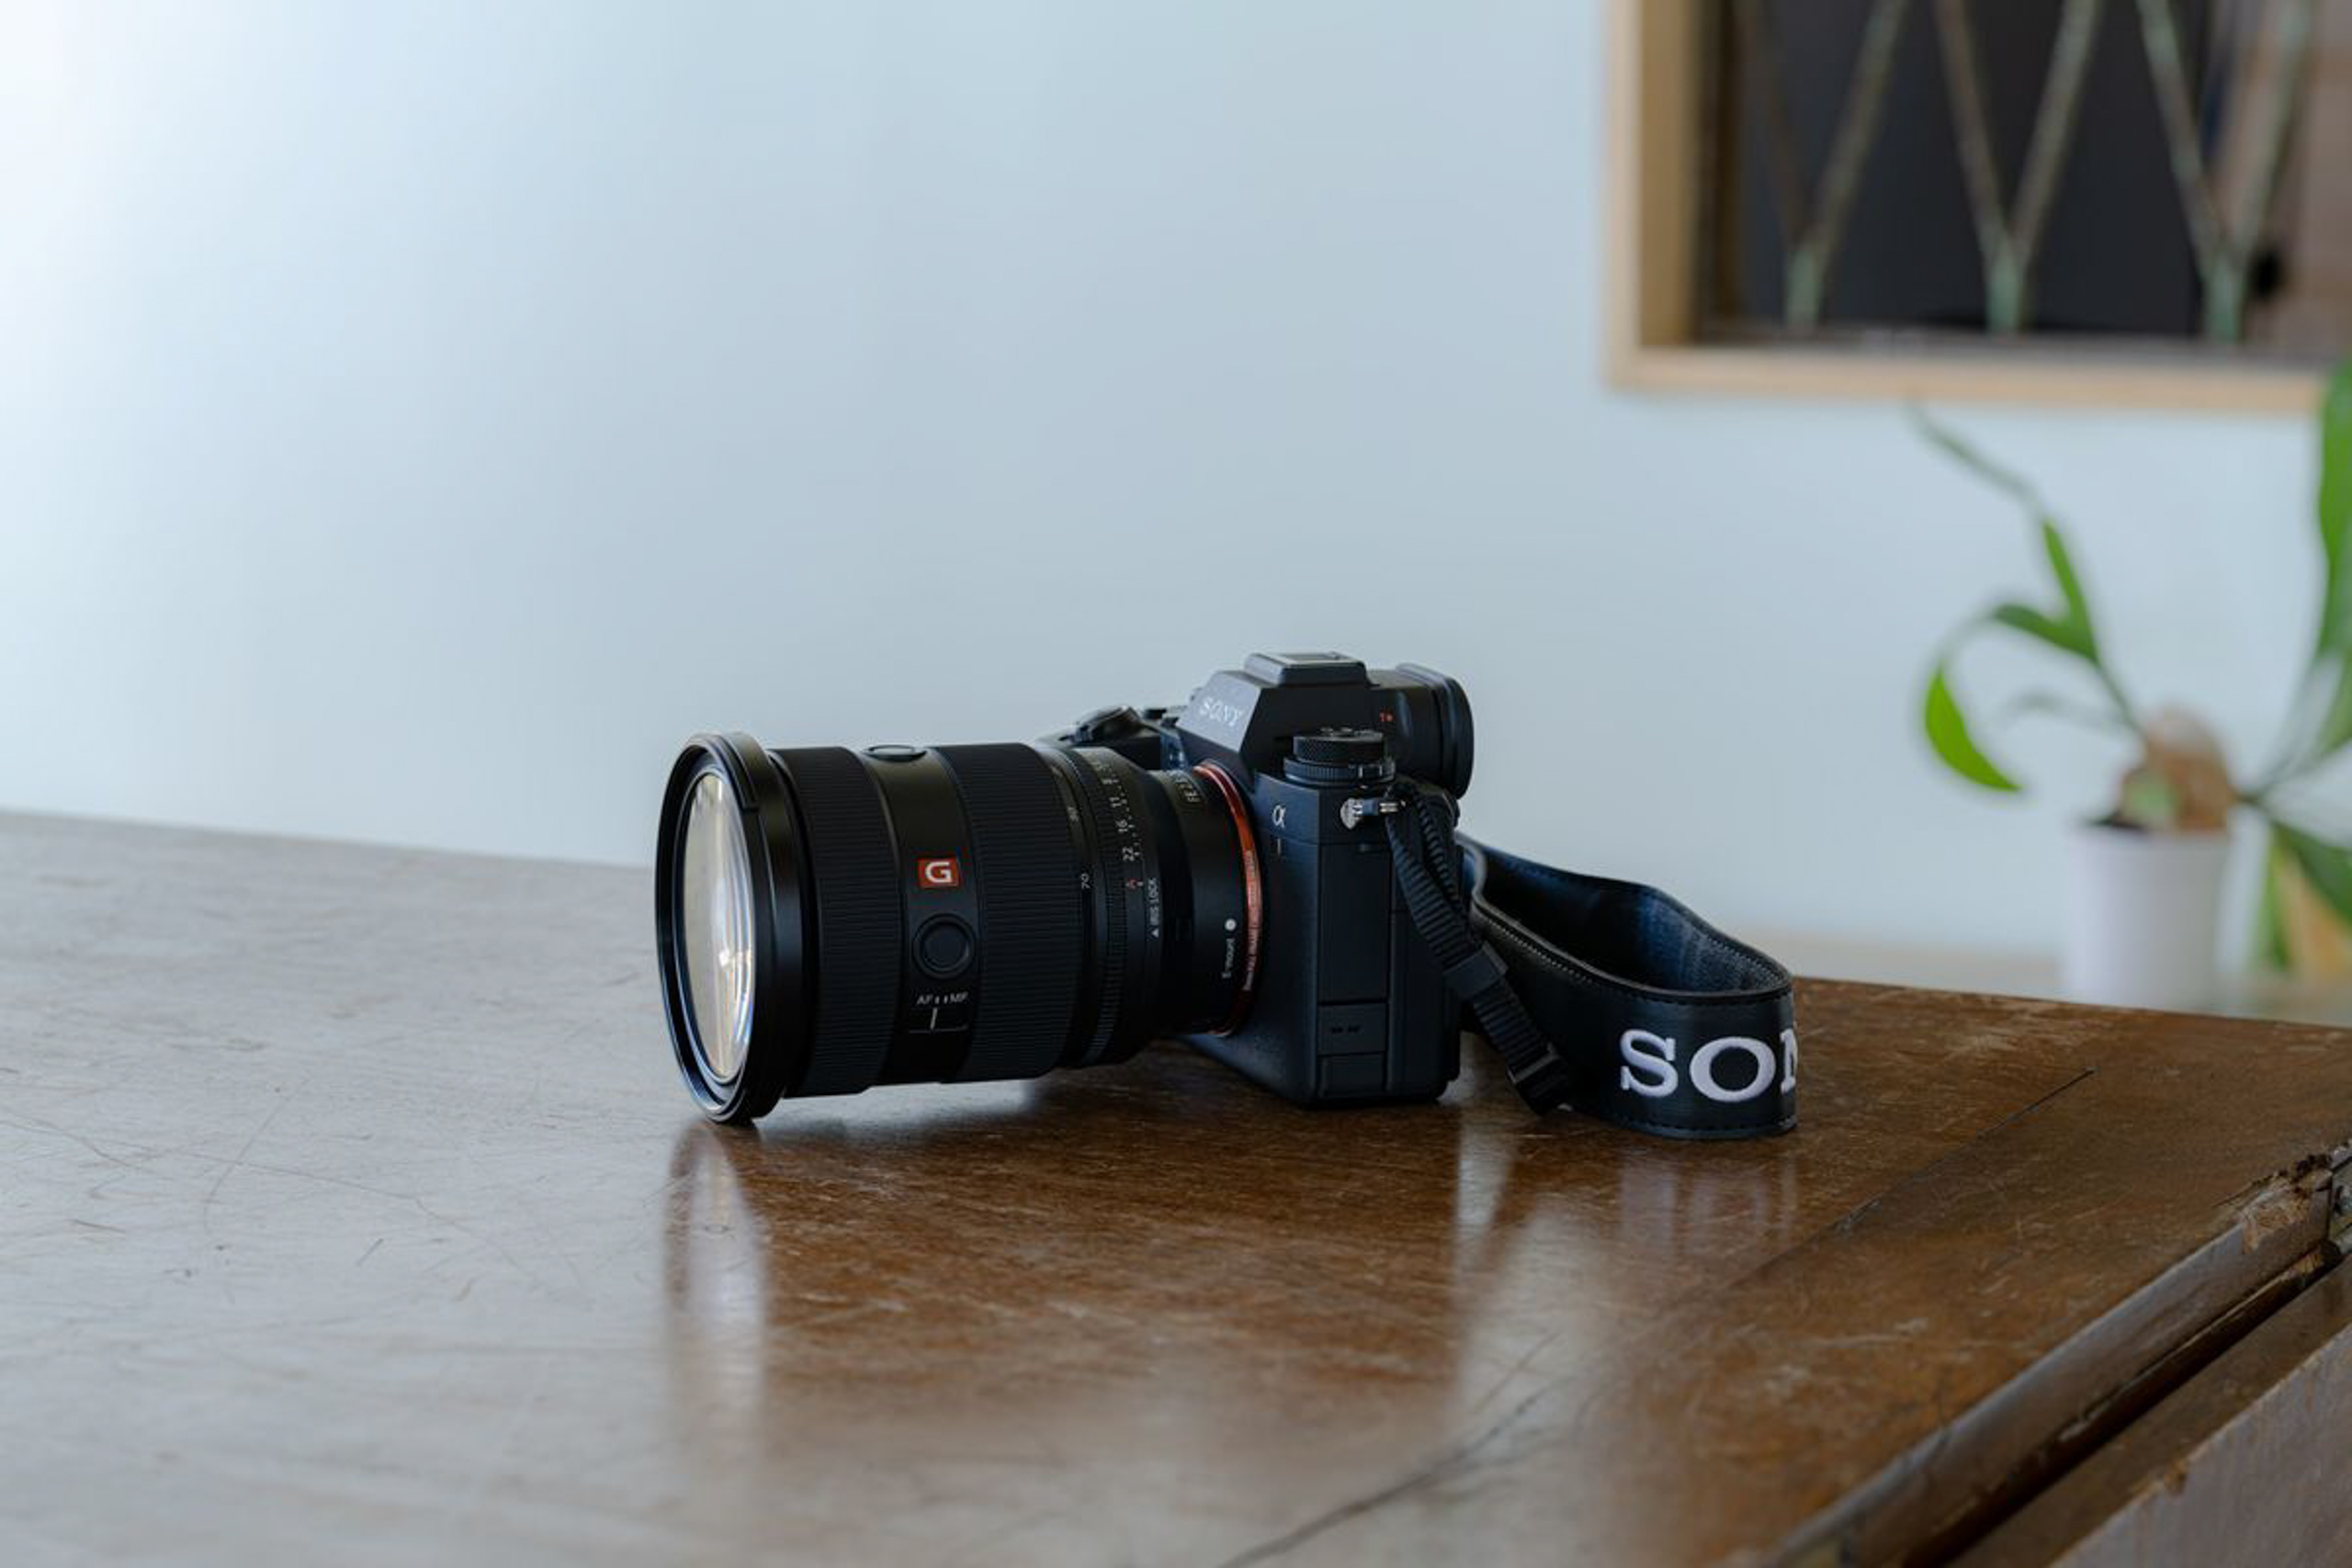 Sony ra mắt FE 24-70mm F2.8 GM II – Ống kính Zoom tiêu chuẩn khẩu độ F2.8 nhỏ và nhẹ nhất thế giới